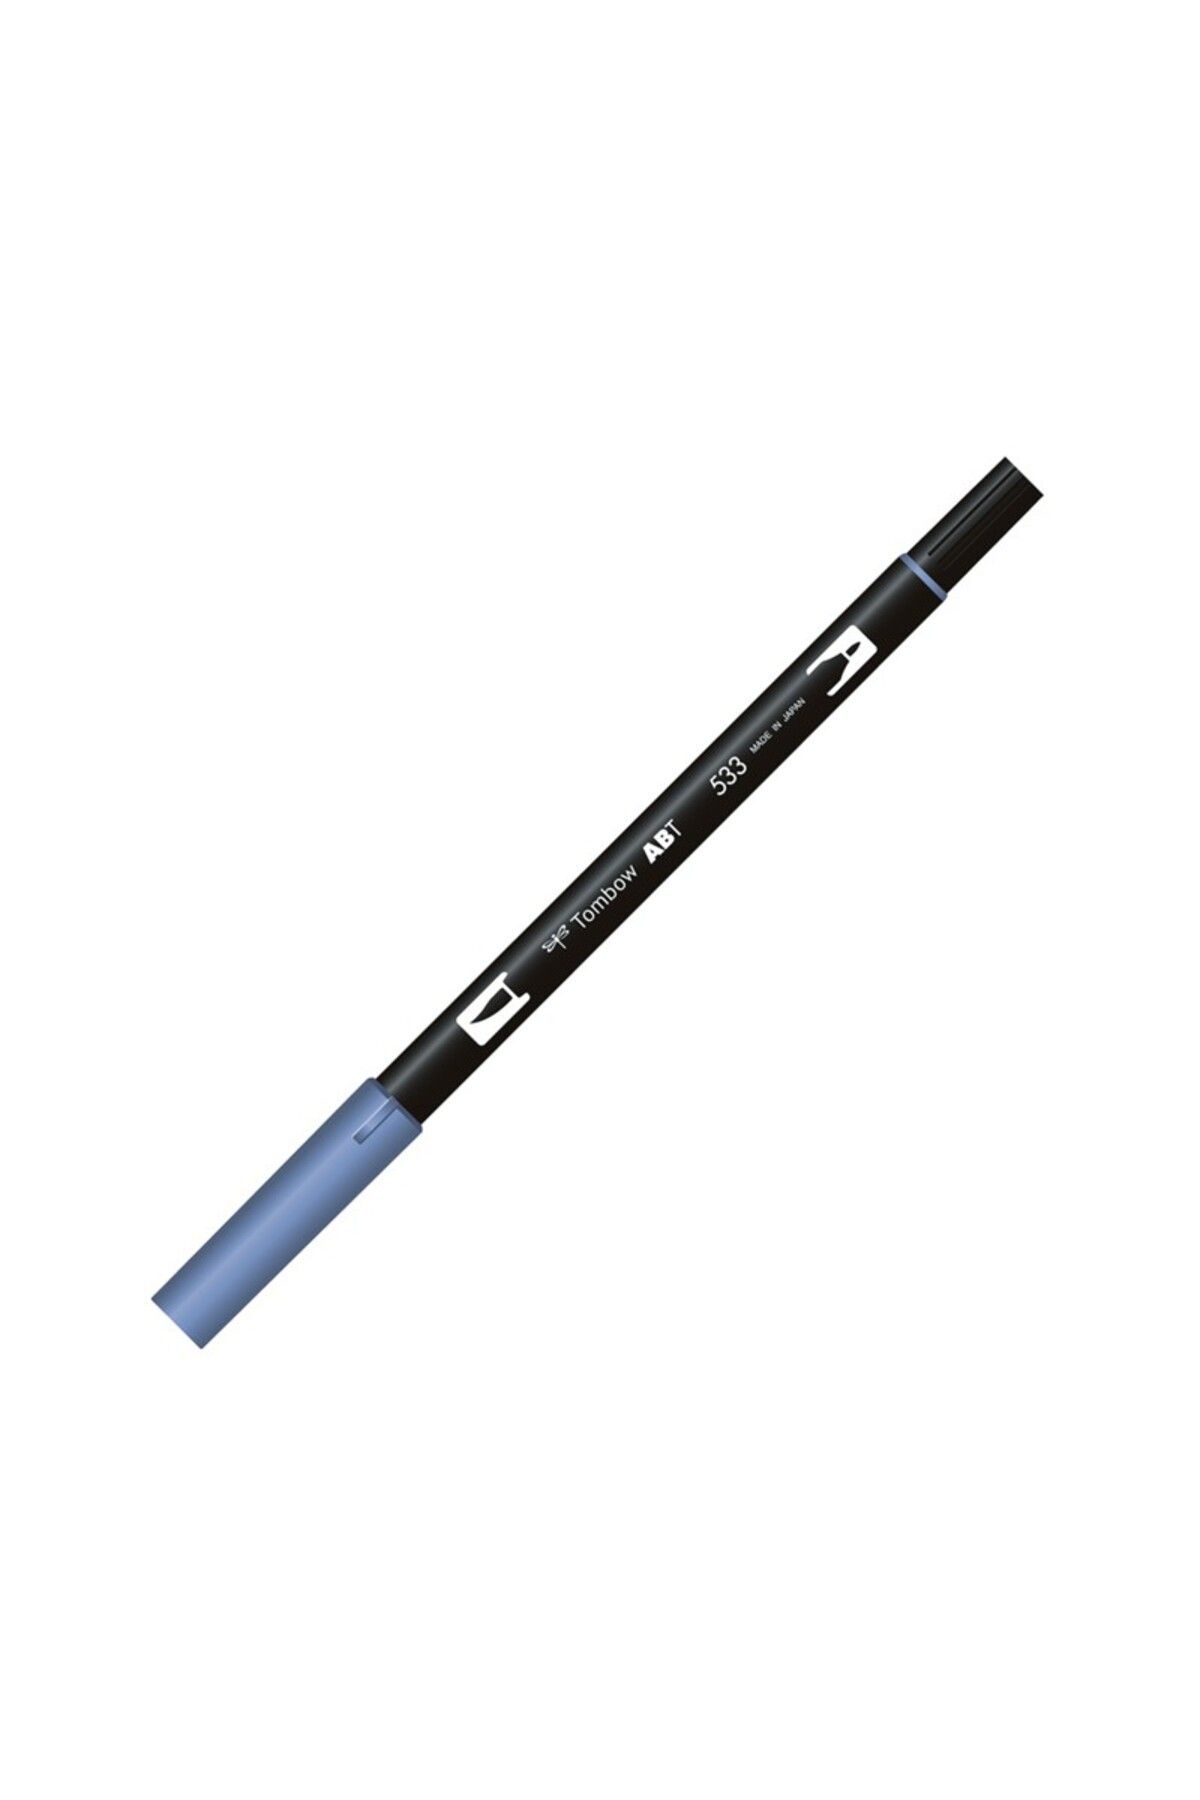 Tombow Ab-t Dual Brush Pen Grafik Kalemi Peacock Blue 533